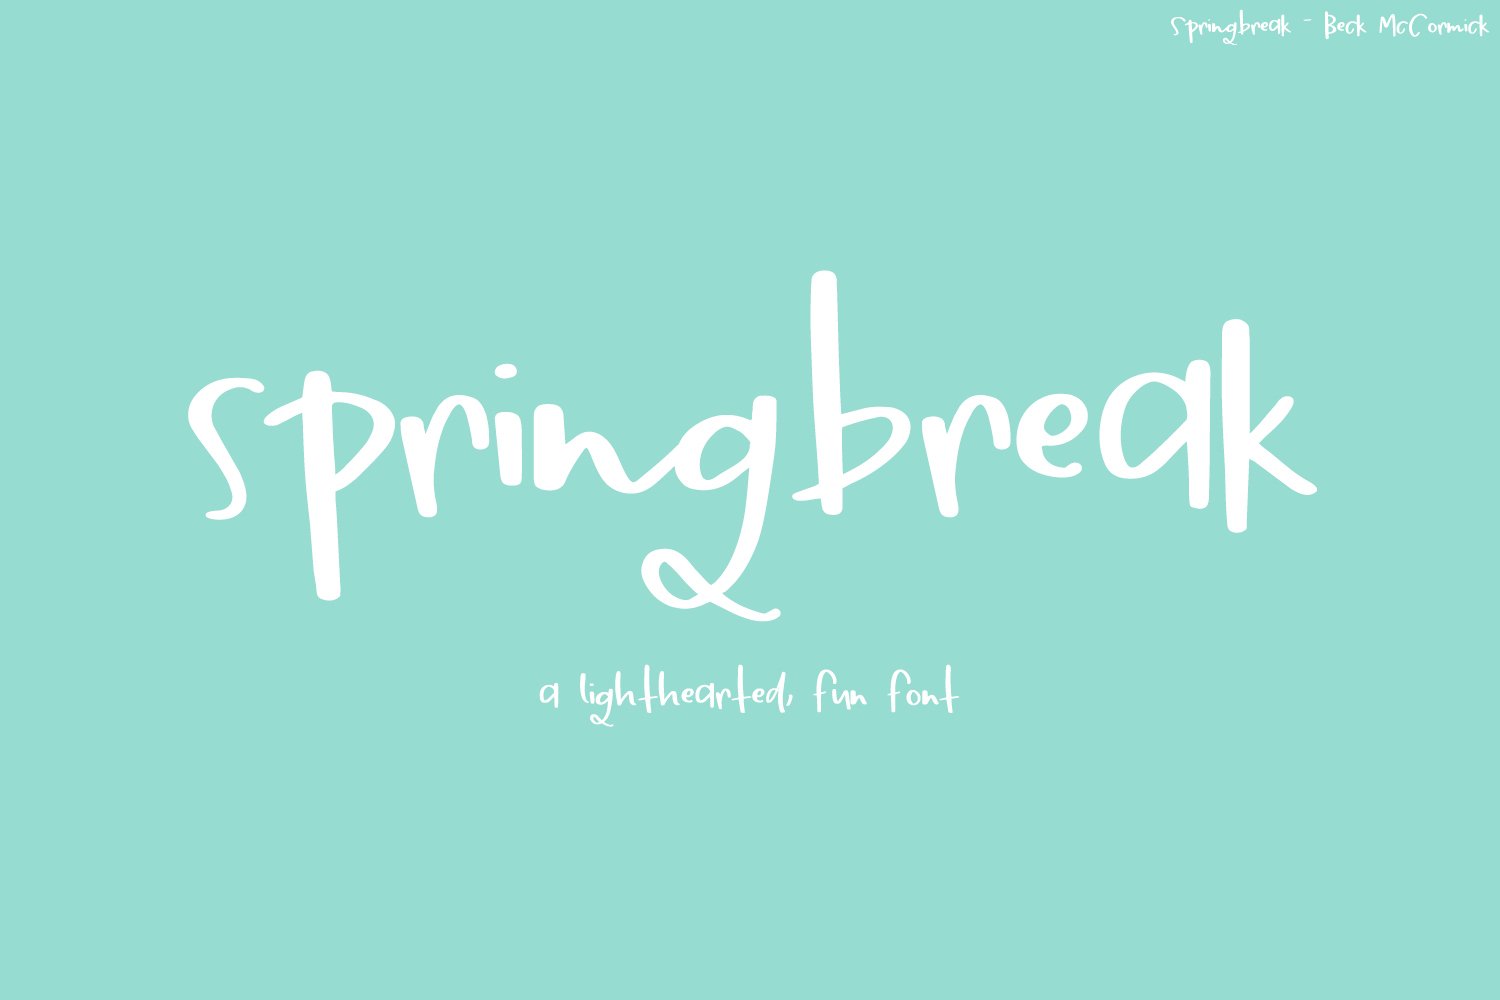 Springbreak Font cover image.